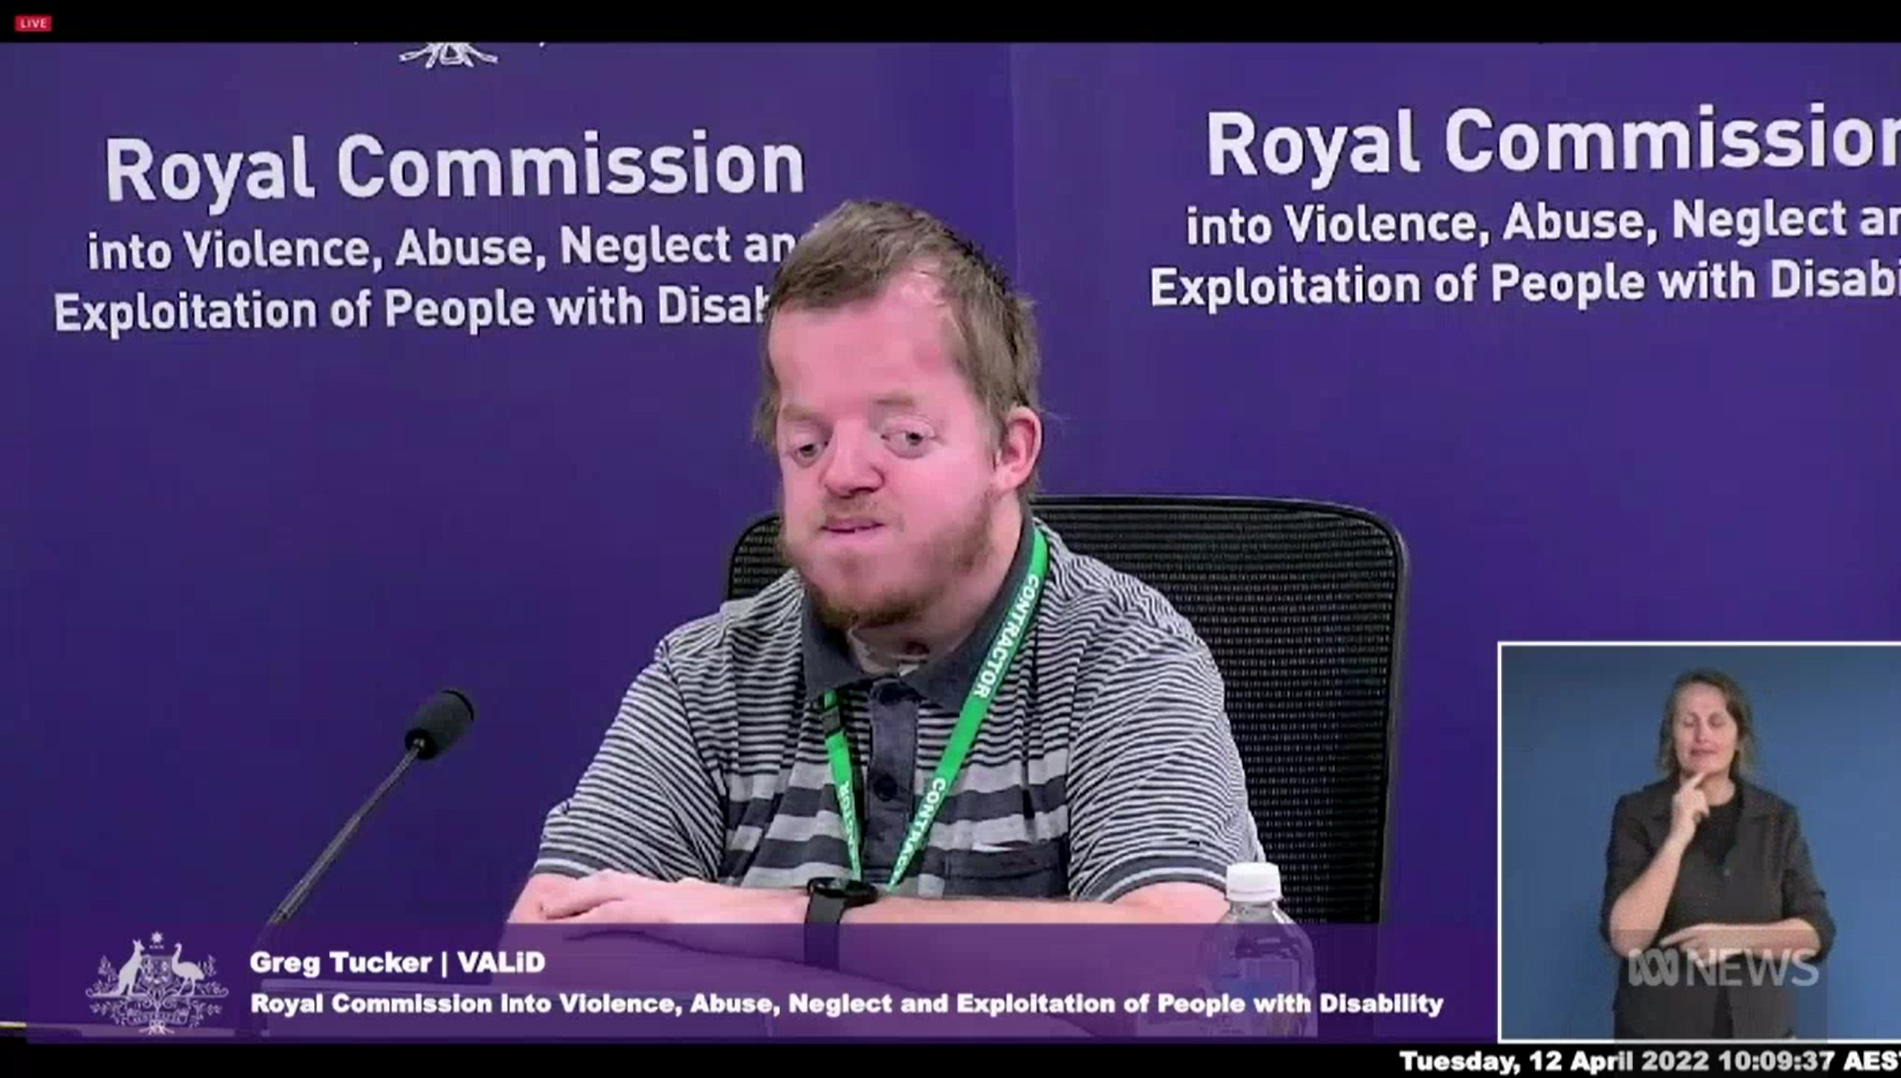 格雷格·塔克在紫色皇家委员会横幅前作证的屏幕截图。